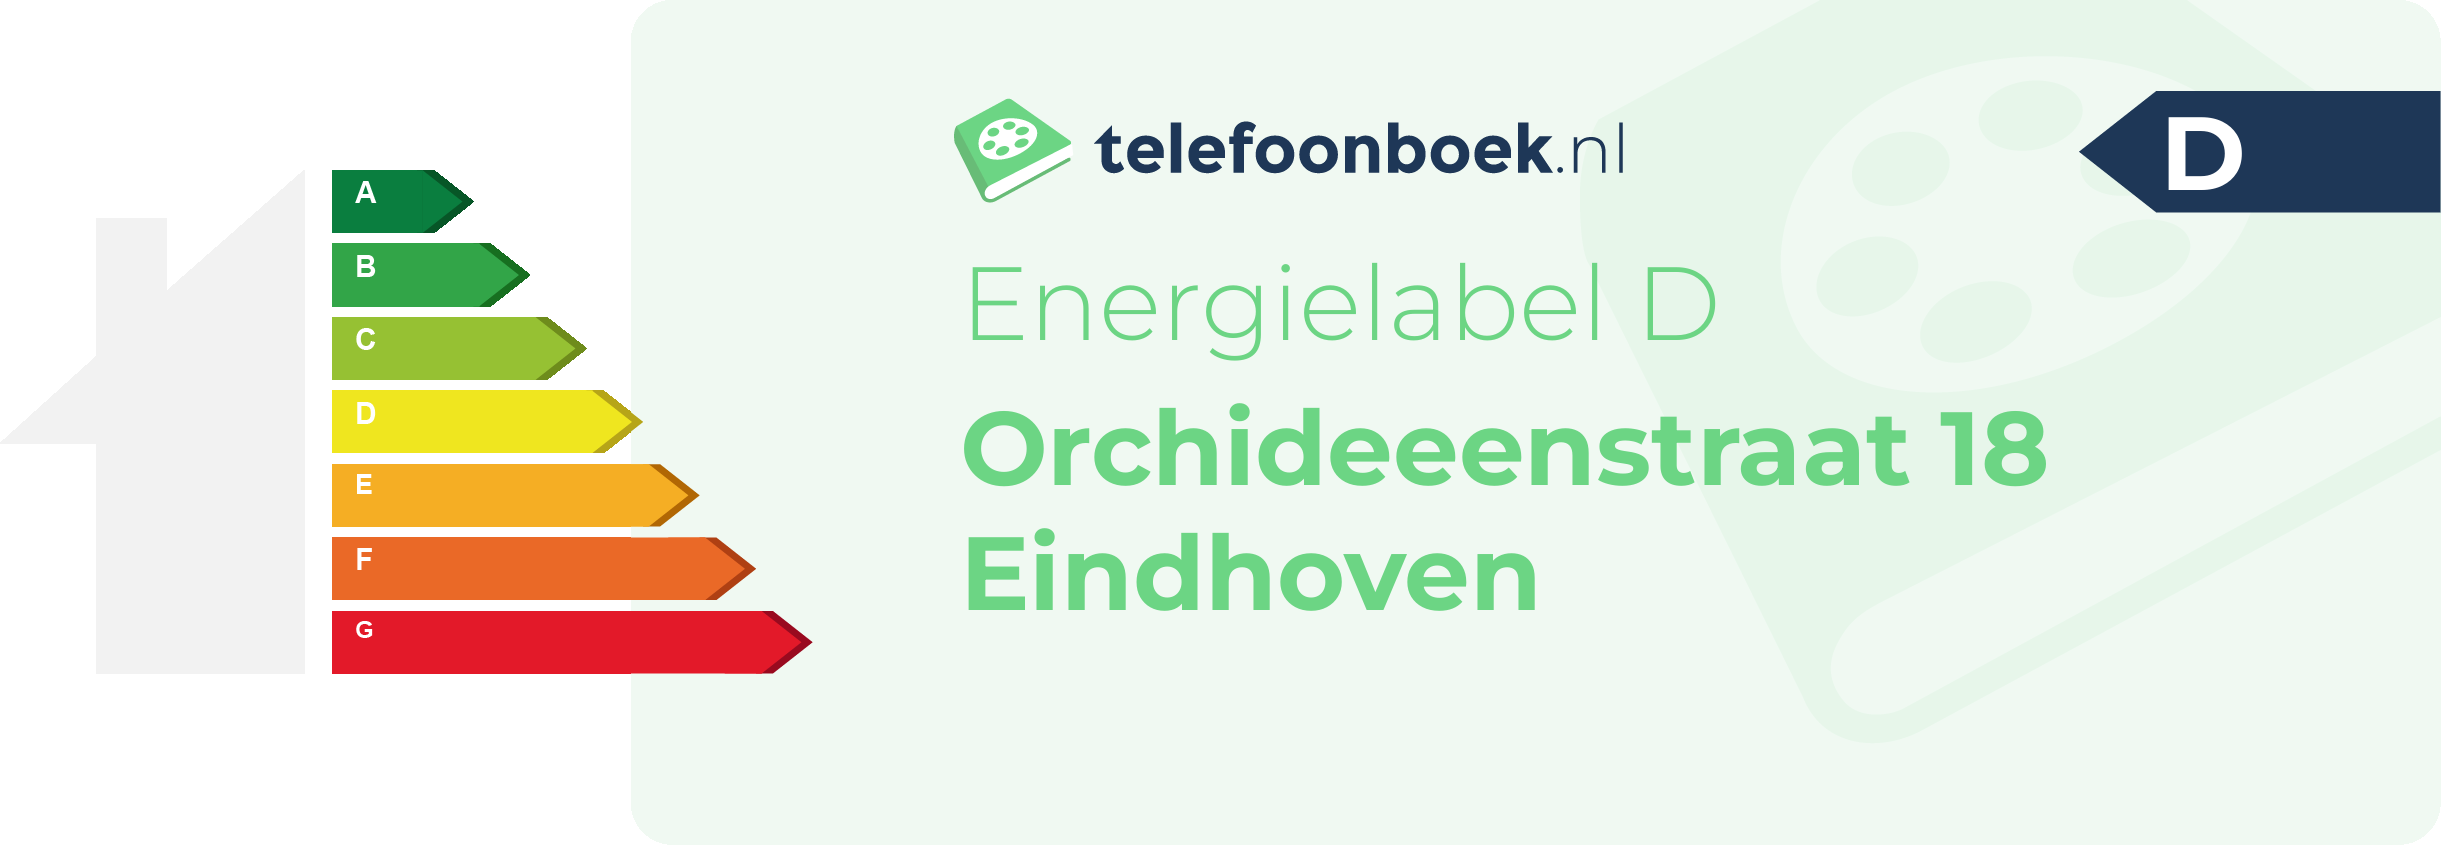 Energielabel Orchideeenstraat 18 Eindhoven